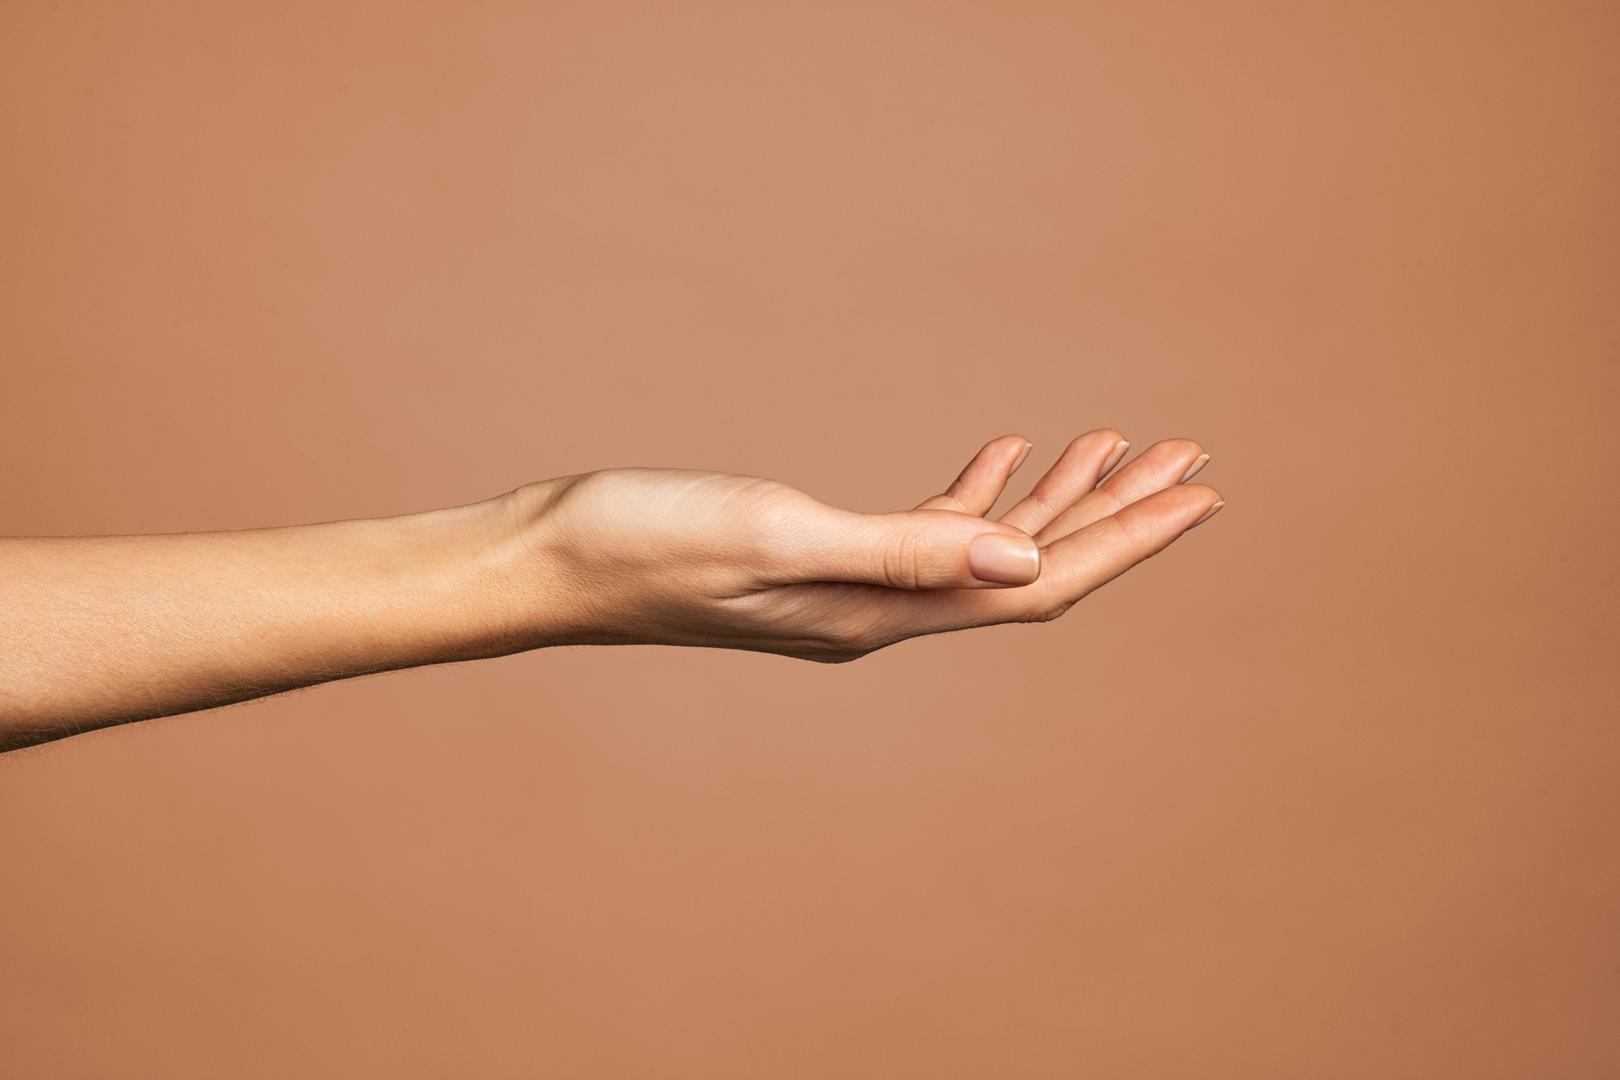 U prstima nema mišića: Naši prsti rade bezbroj važnih stvari tijekom dana, od pisanja do otvaranja vrata. Ali nemojte pripisivati ​​te podvige snage svojim prstima. Svaki pokret koji se dogodi u našim prstima je zbog tetiva i kostiju, uz veliku pomoć mišića na dlanovima i na dnu svakog prsta.